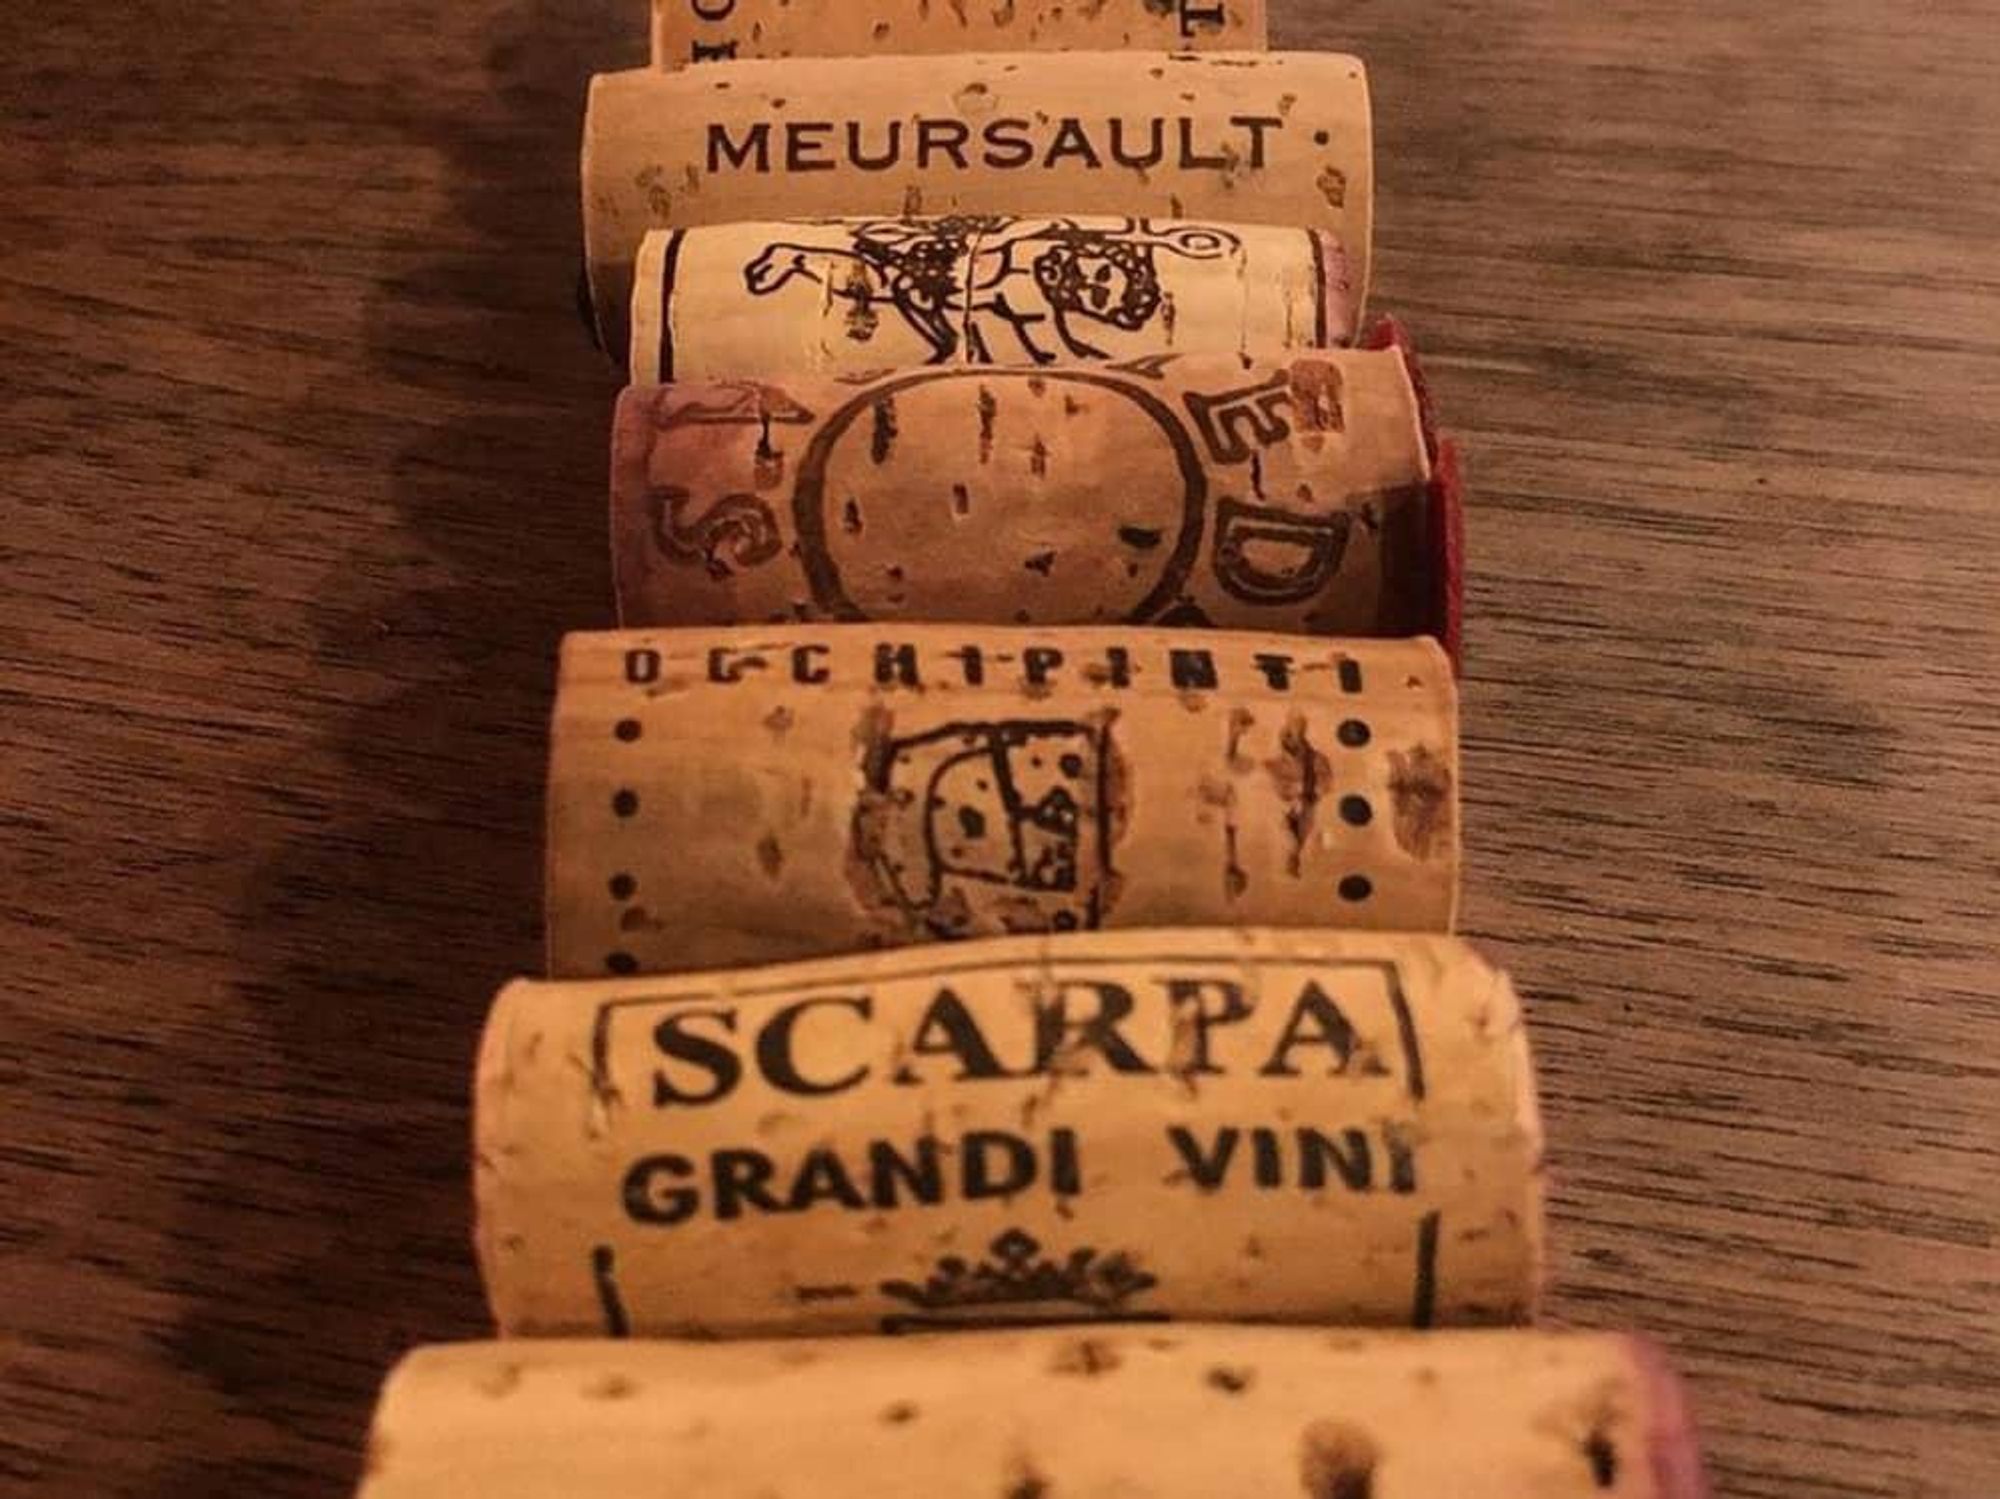 Bufalina wine corks